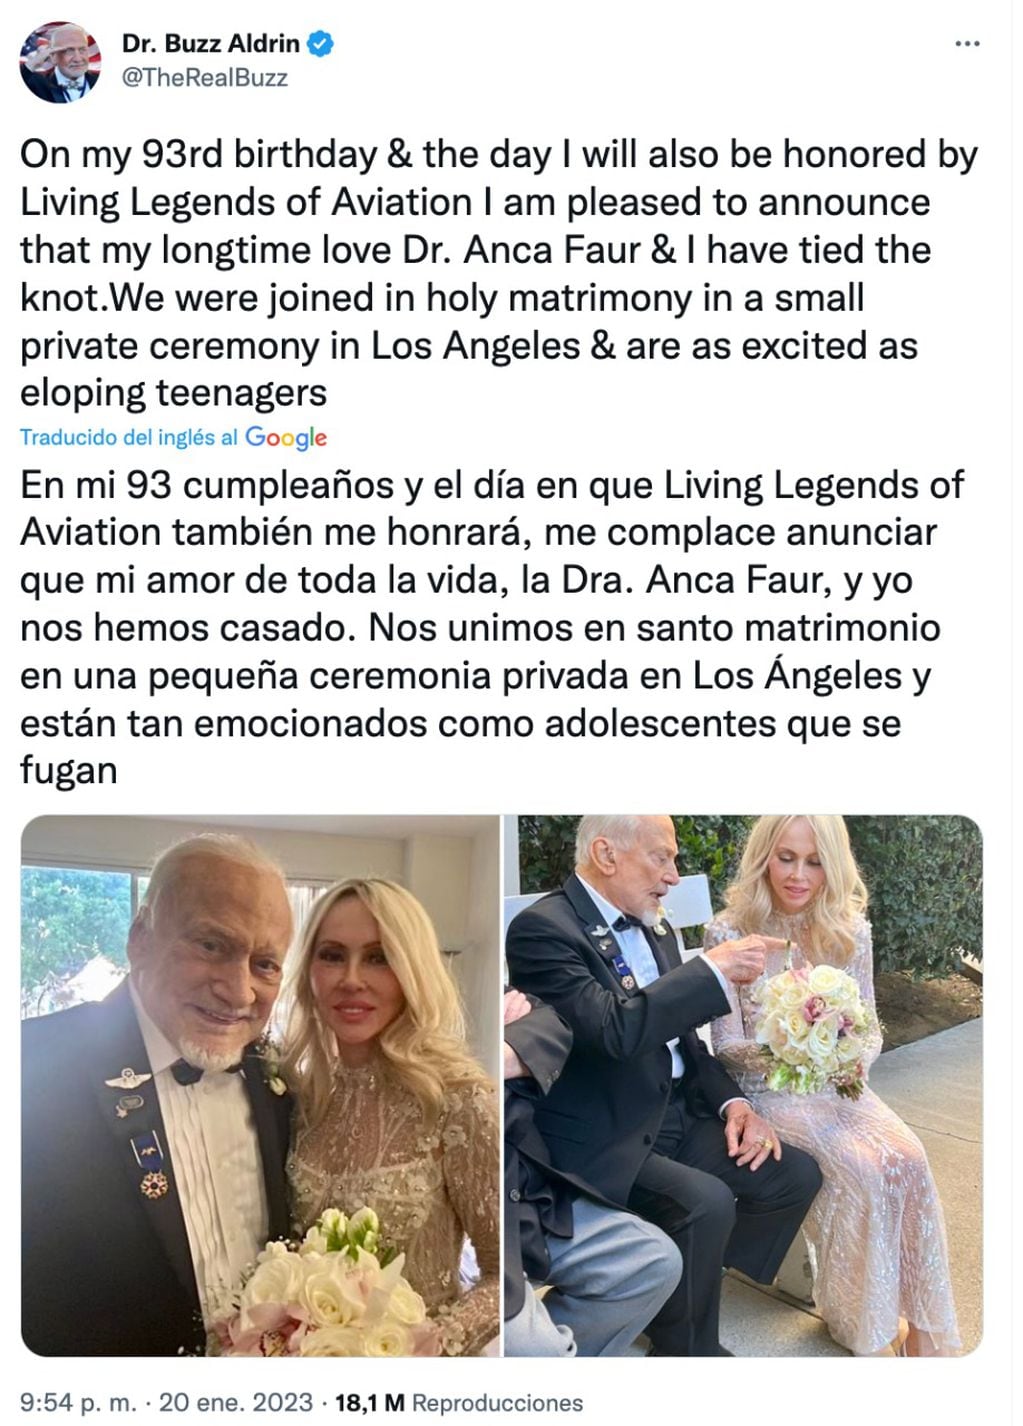 "En mi 93 cumpleaños, me complace anunciar que mi amor de toda la vida, la doctora Anca Faur, y yo nos hemos casado". Gentileza: Twitter: @TheRealBuzz